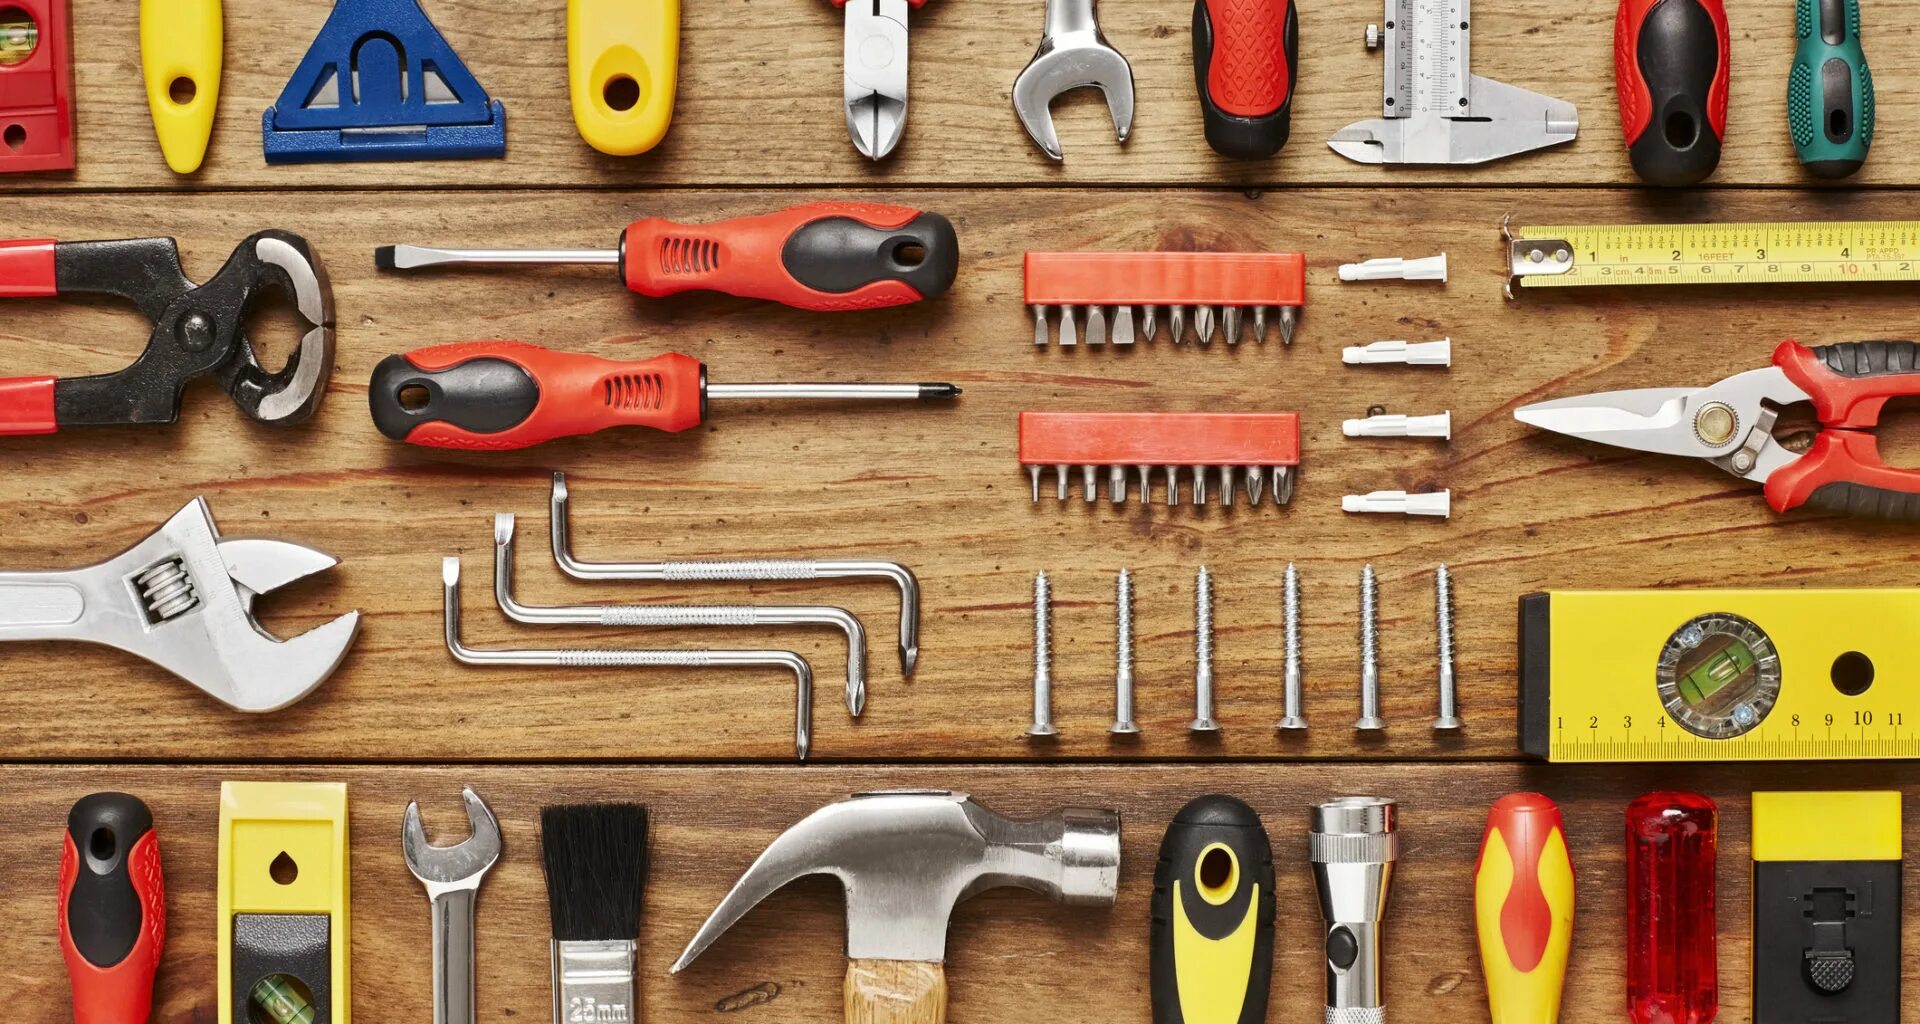 Строительные инструменты. Инструменты для стройки. Инструменты для истройка. Ручной строительный инструмент. Tool materials